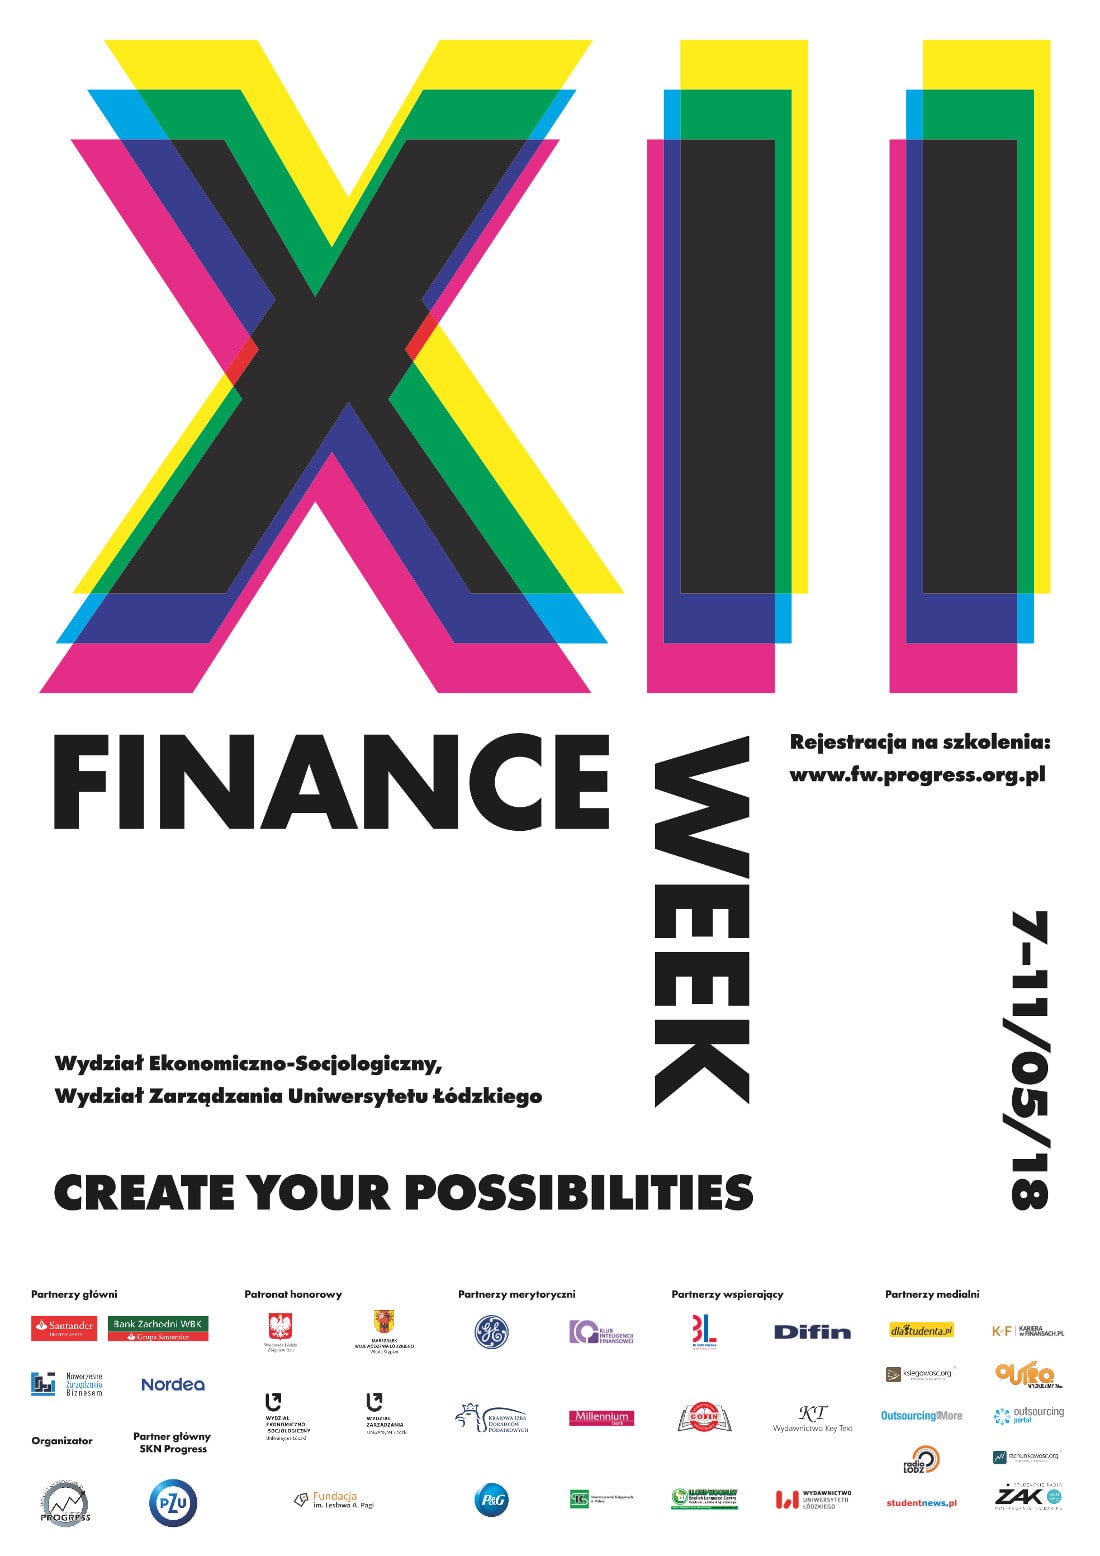 Finance Week odbędzie się w dniach 7-11 maja 2018 roku.